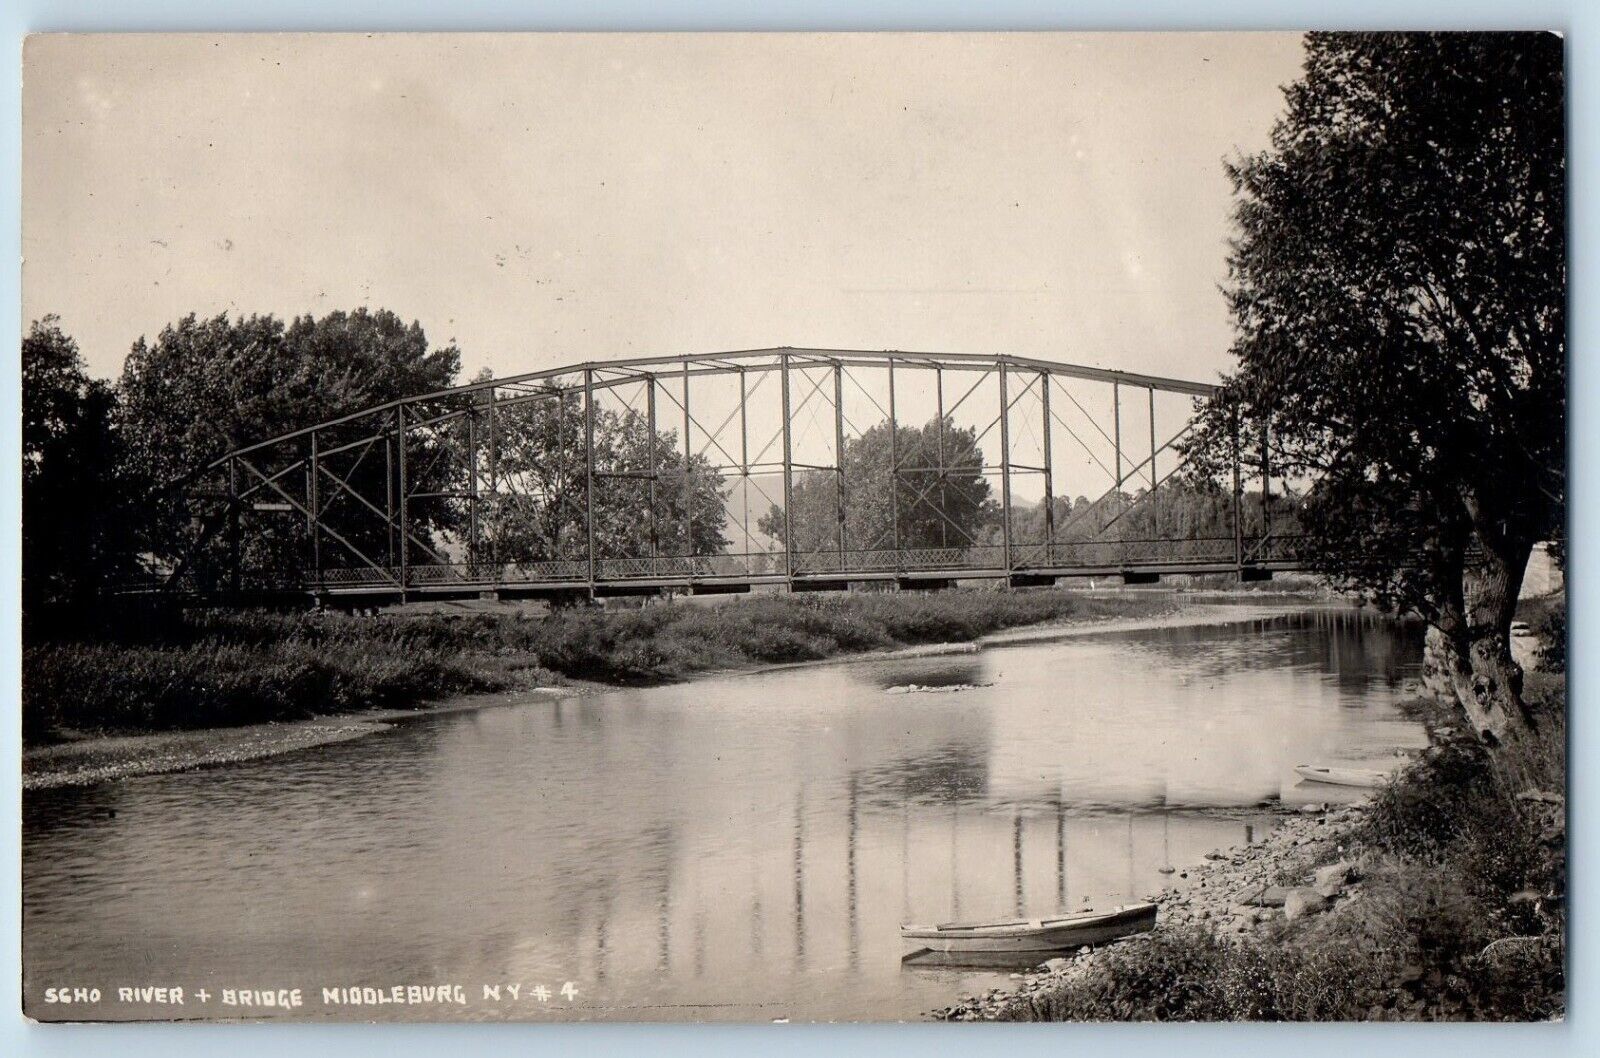 Middleburg New York NY Postcard RPPC Photo Scho River & Bridge Boat Scene 1913